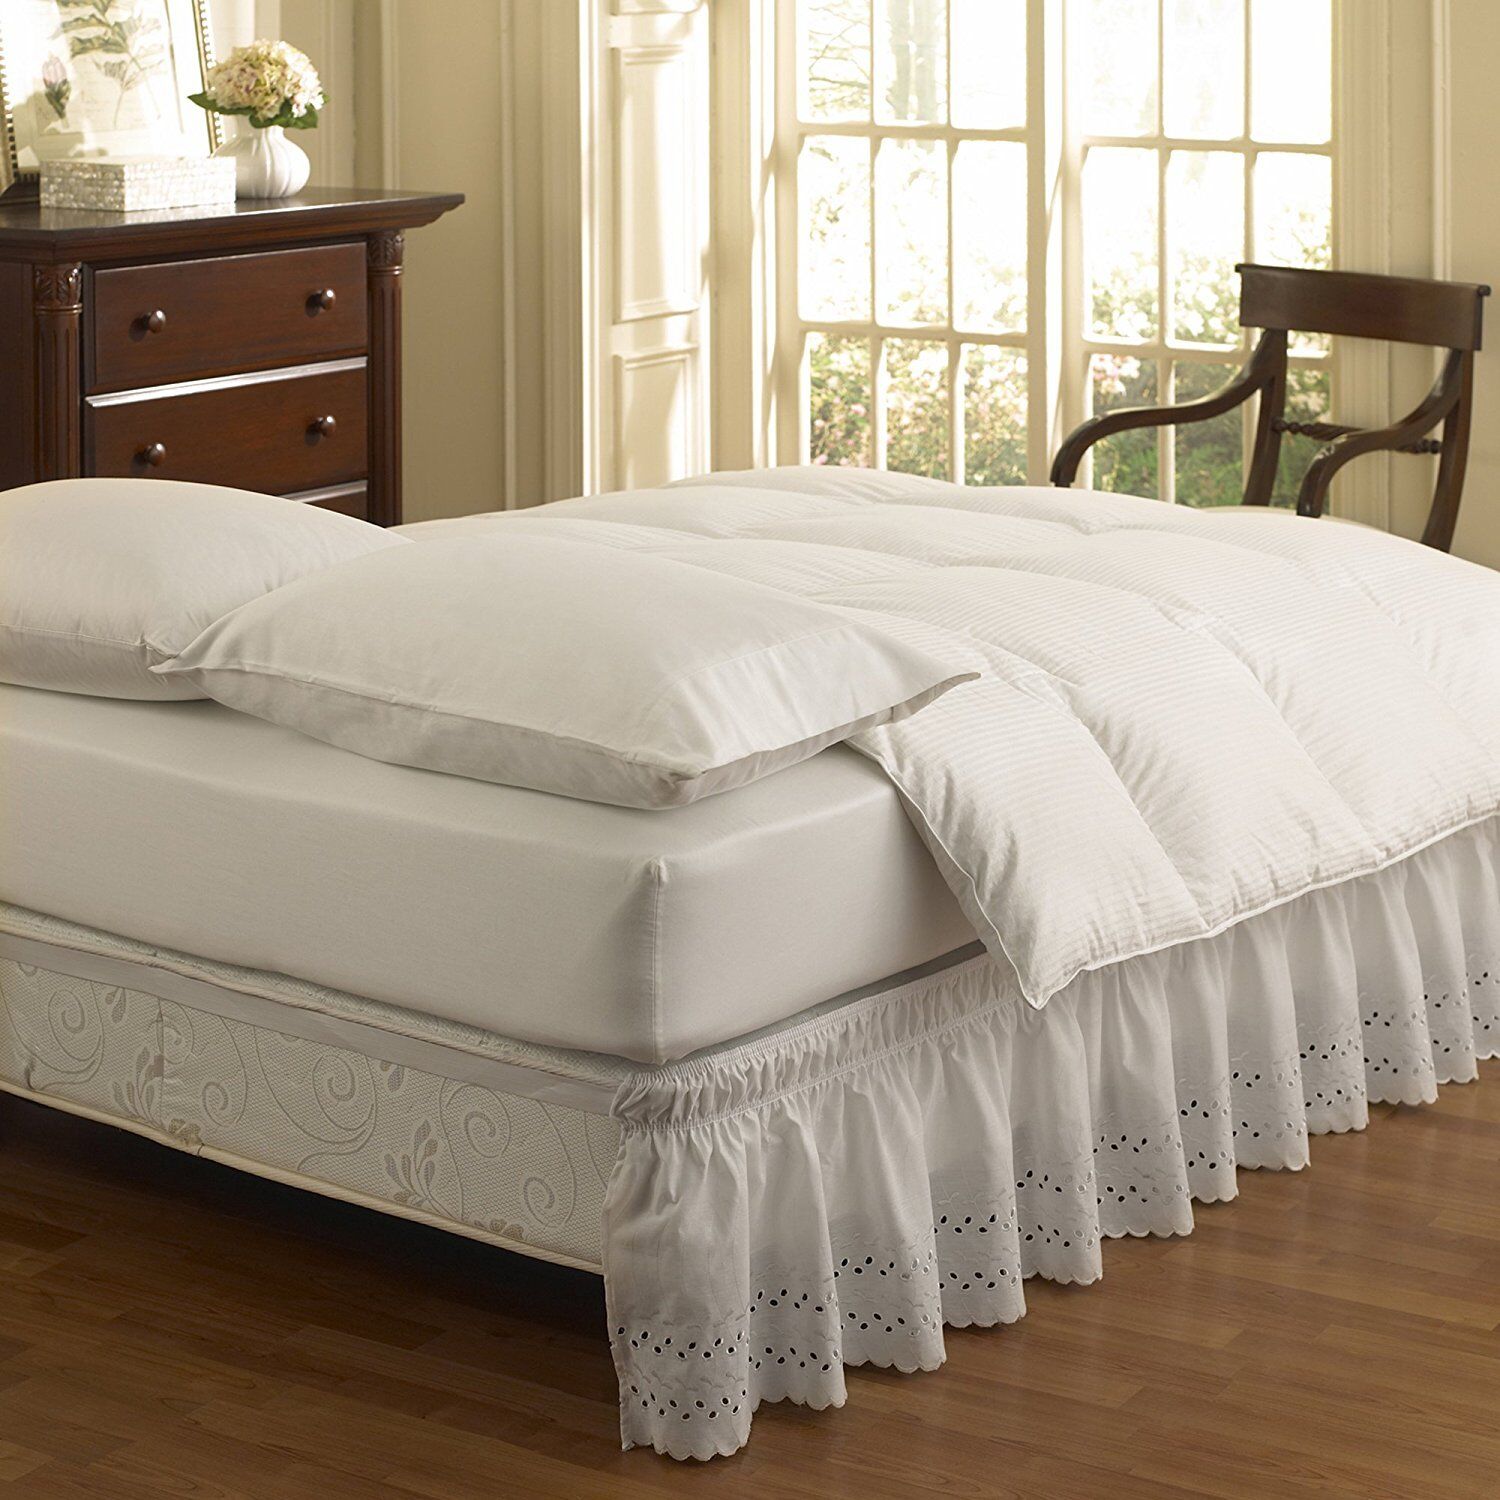 Подзор для кровати: как выбрать нарядную юбочку для оформления спальни